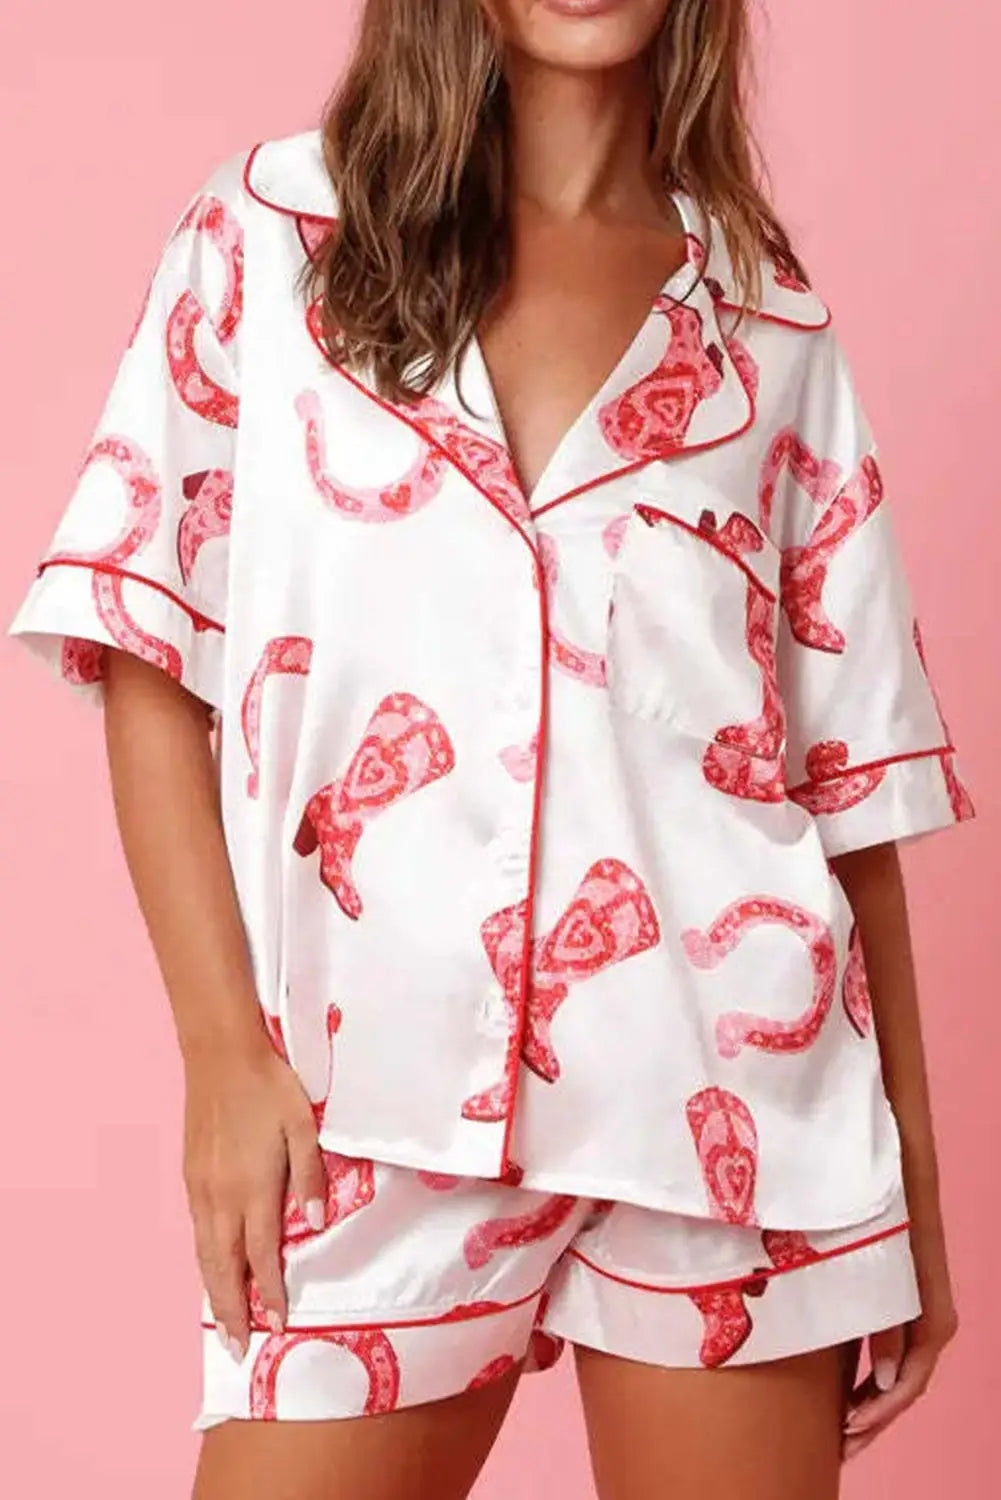 Pink full pattern shirt and shorts satin pajama set - white